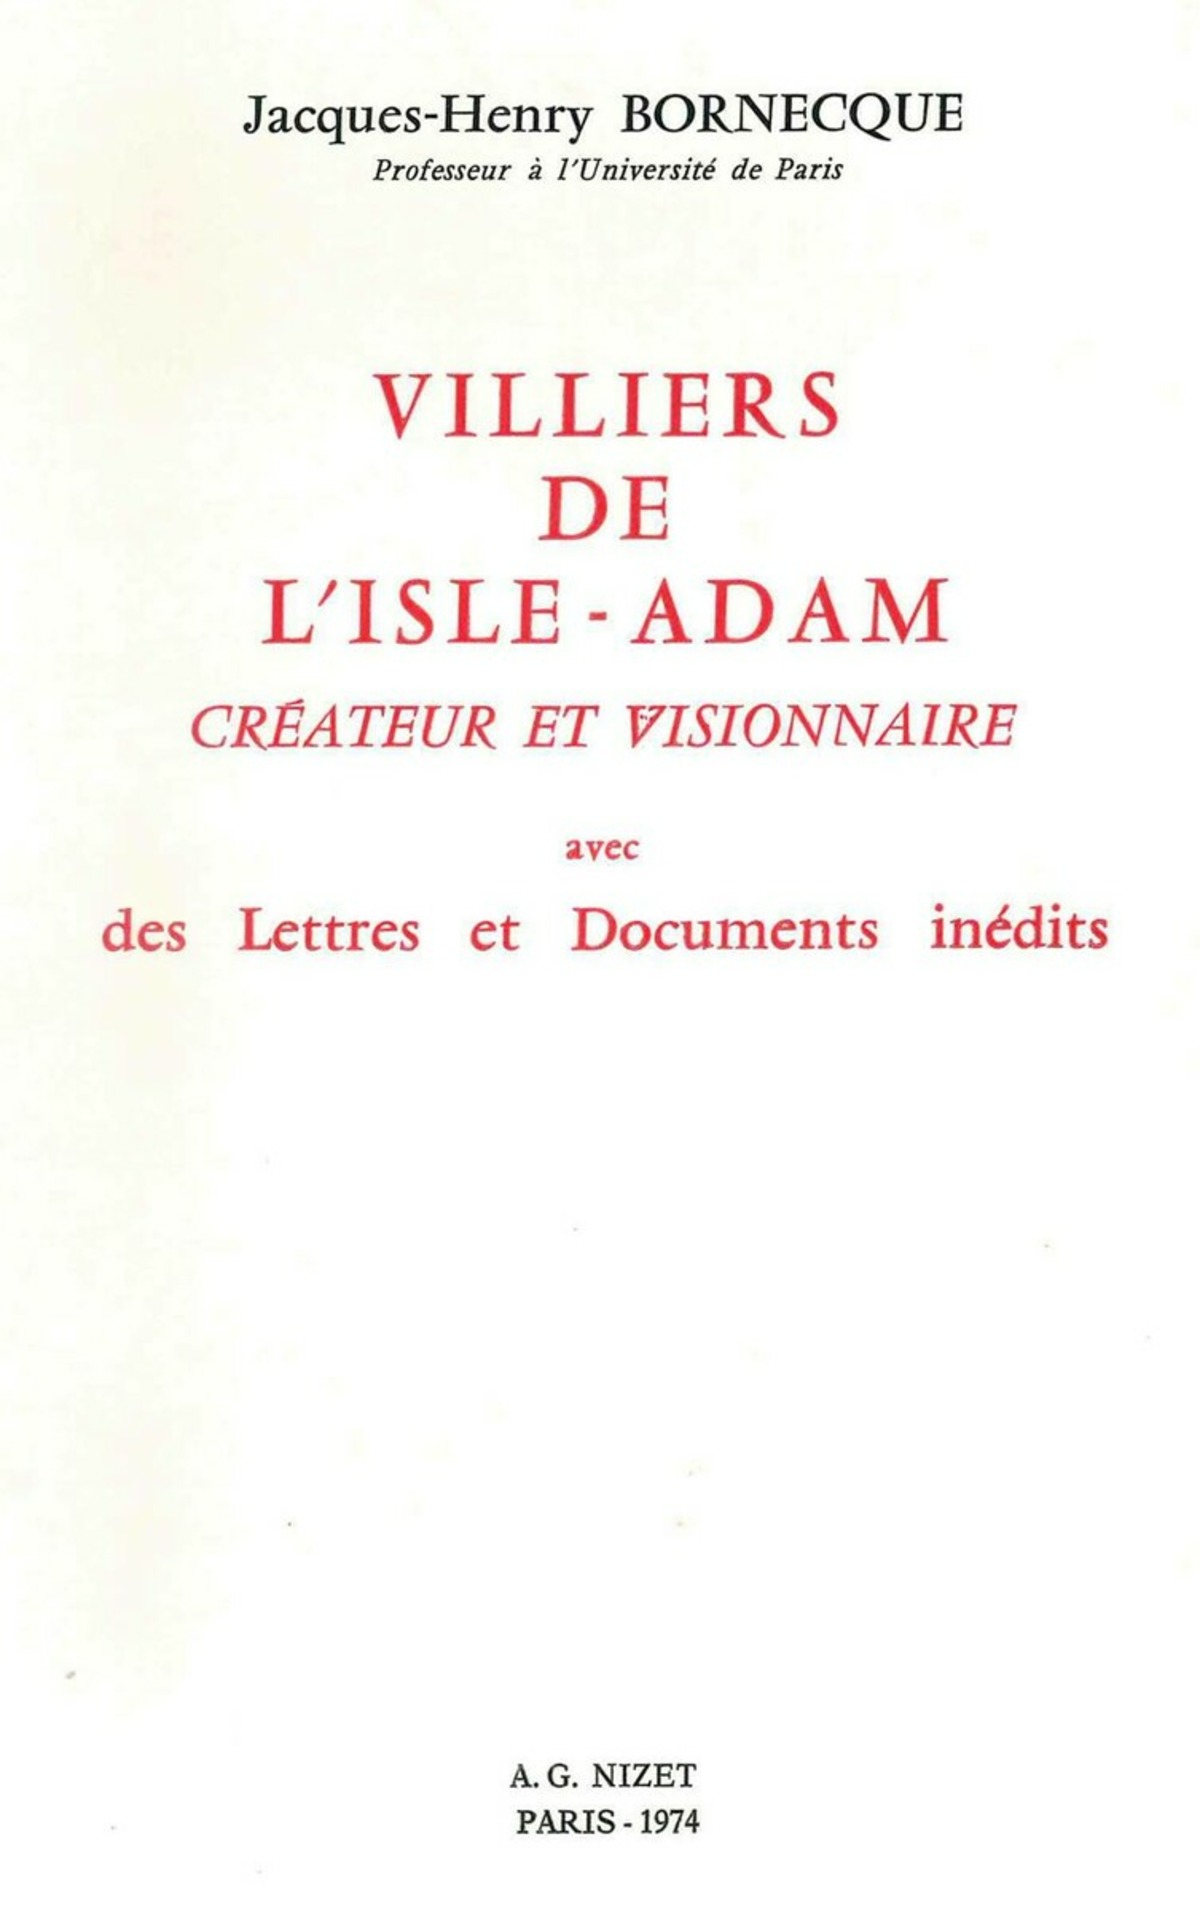 Villiers de l'Isle-Adam, créateur et visionnaire